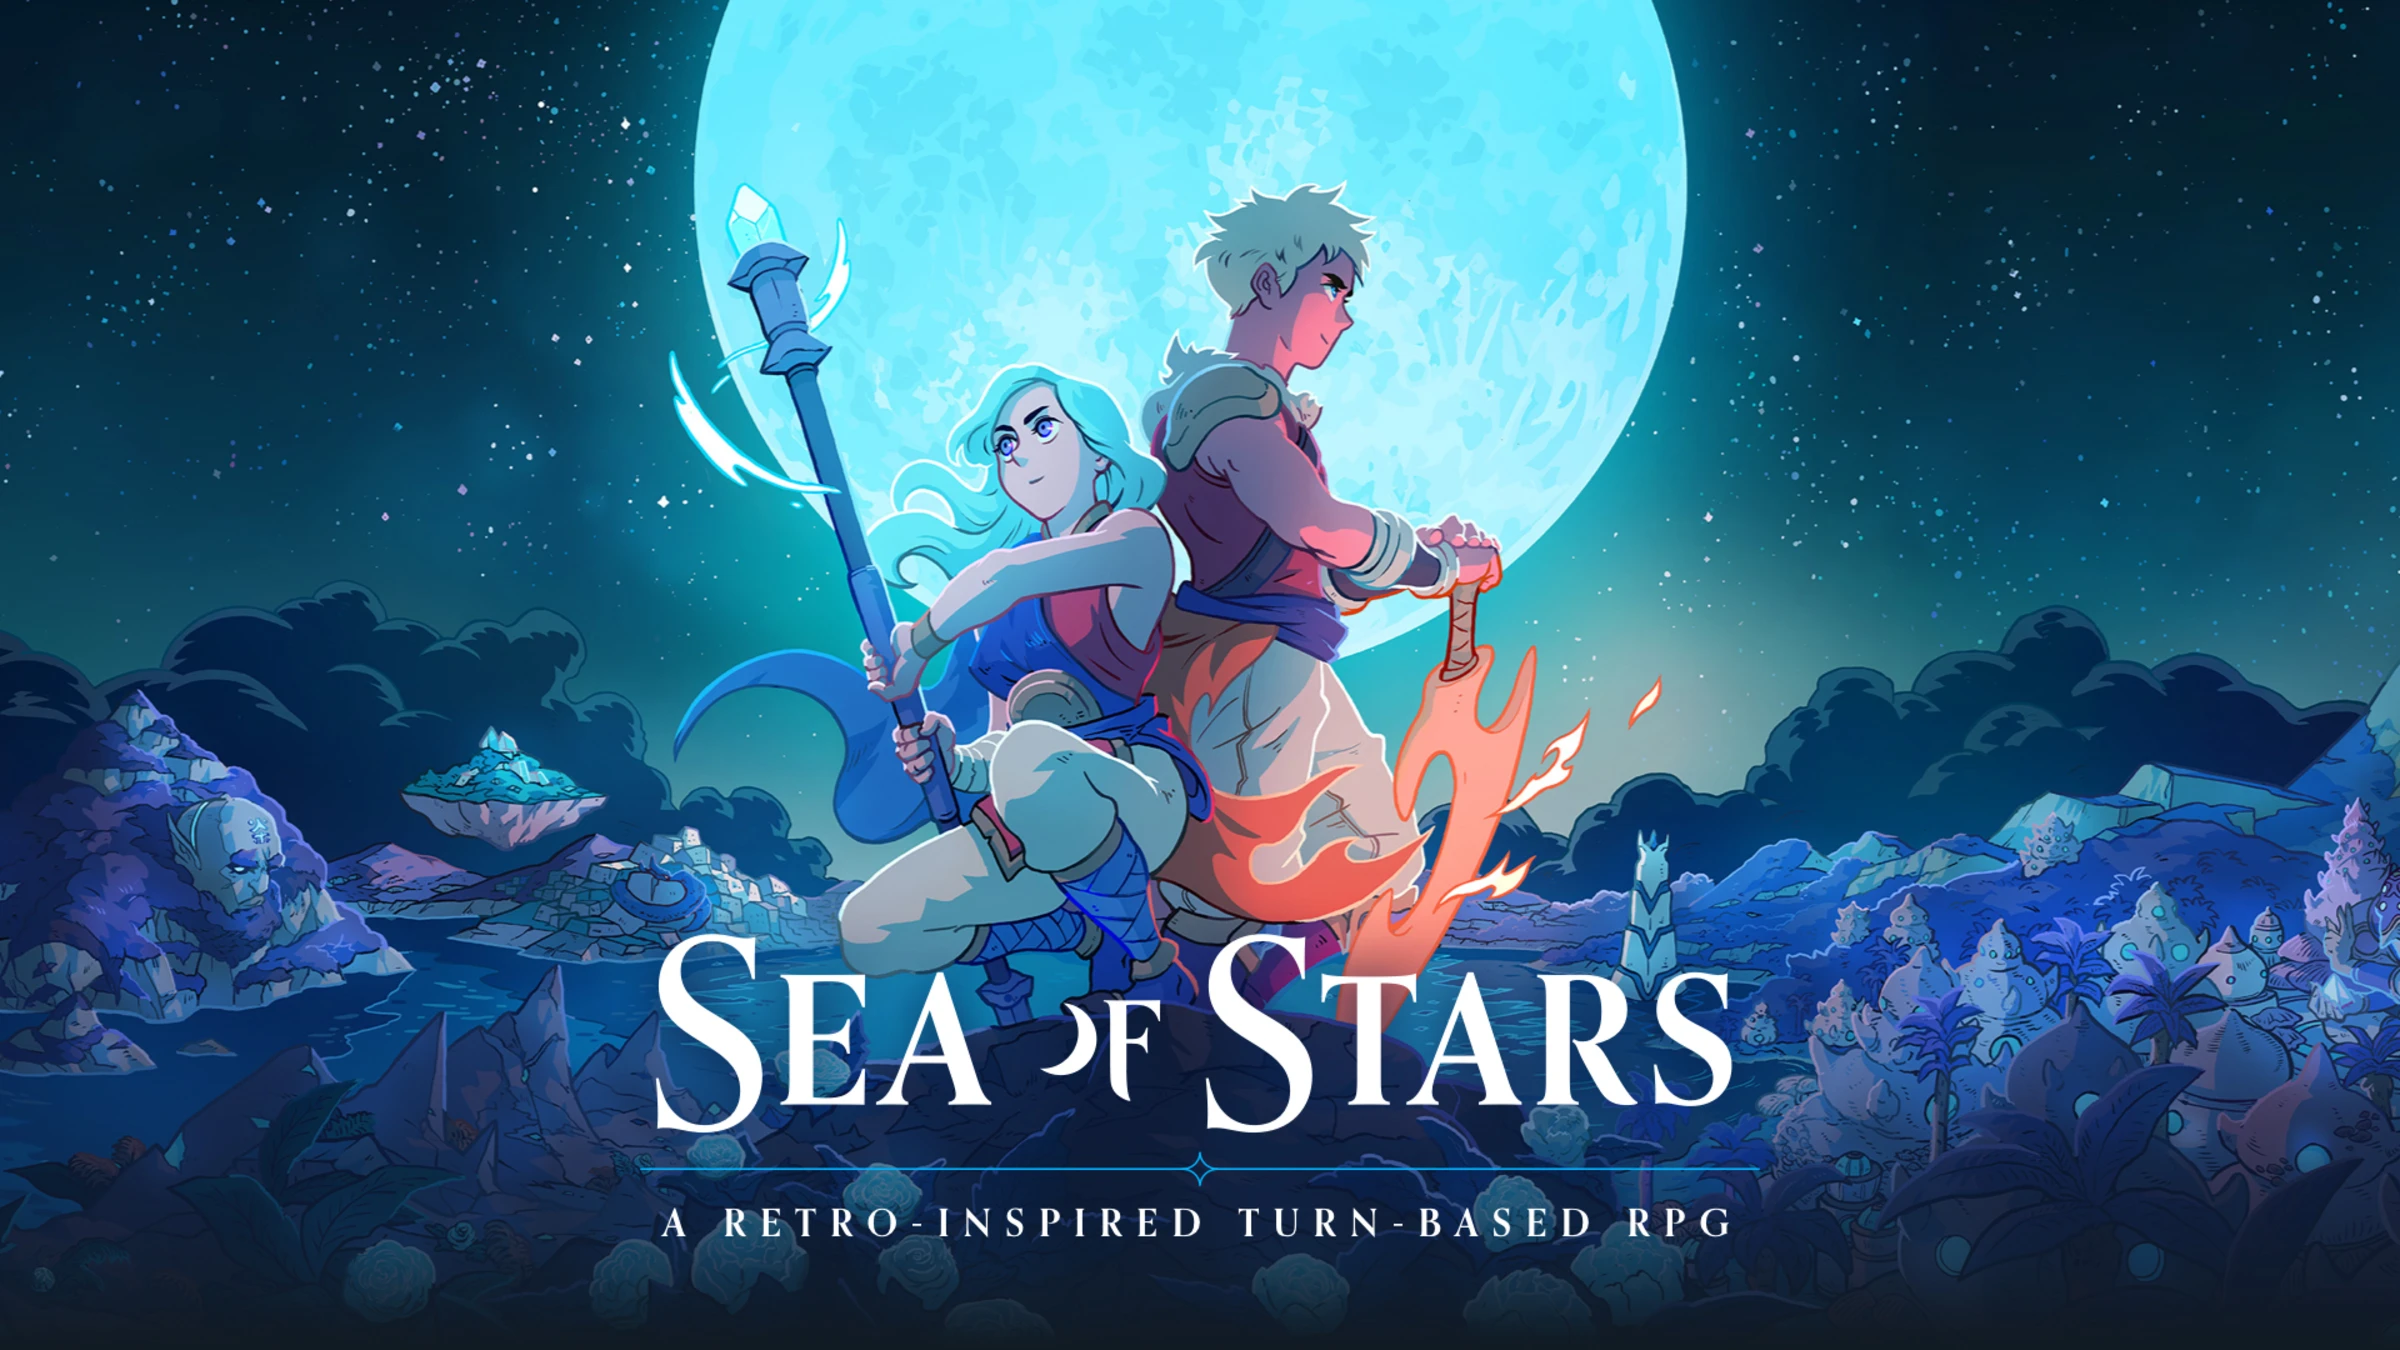 RPG Sea of Stars продалася тиражем у понад 100,000 копій  у  перший день після релізу